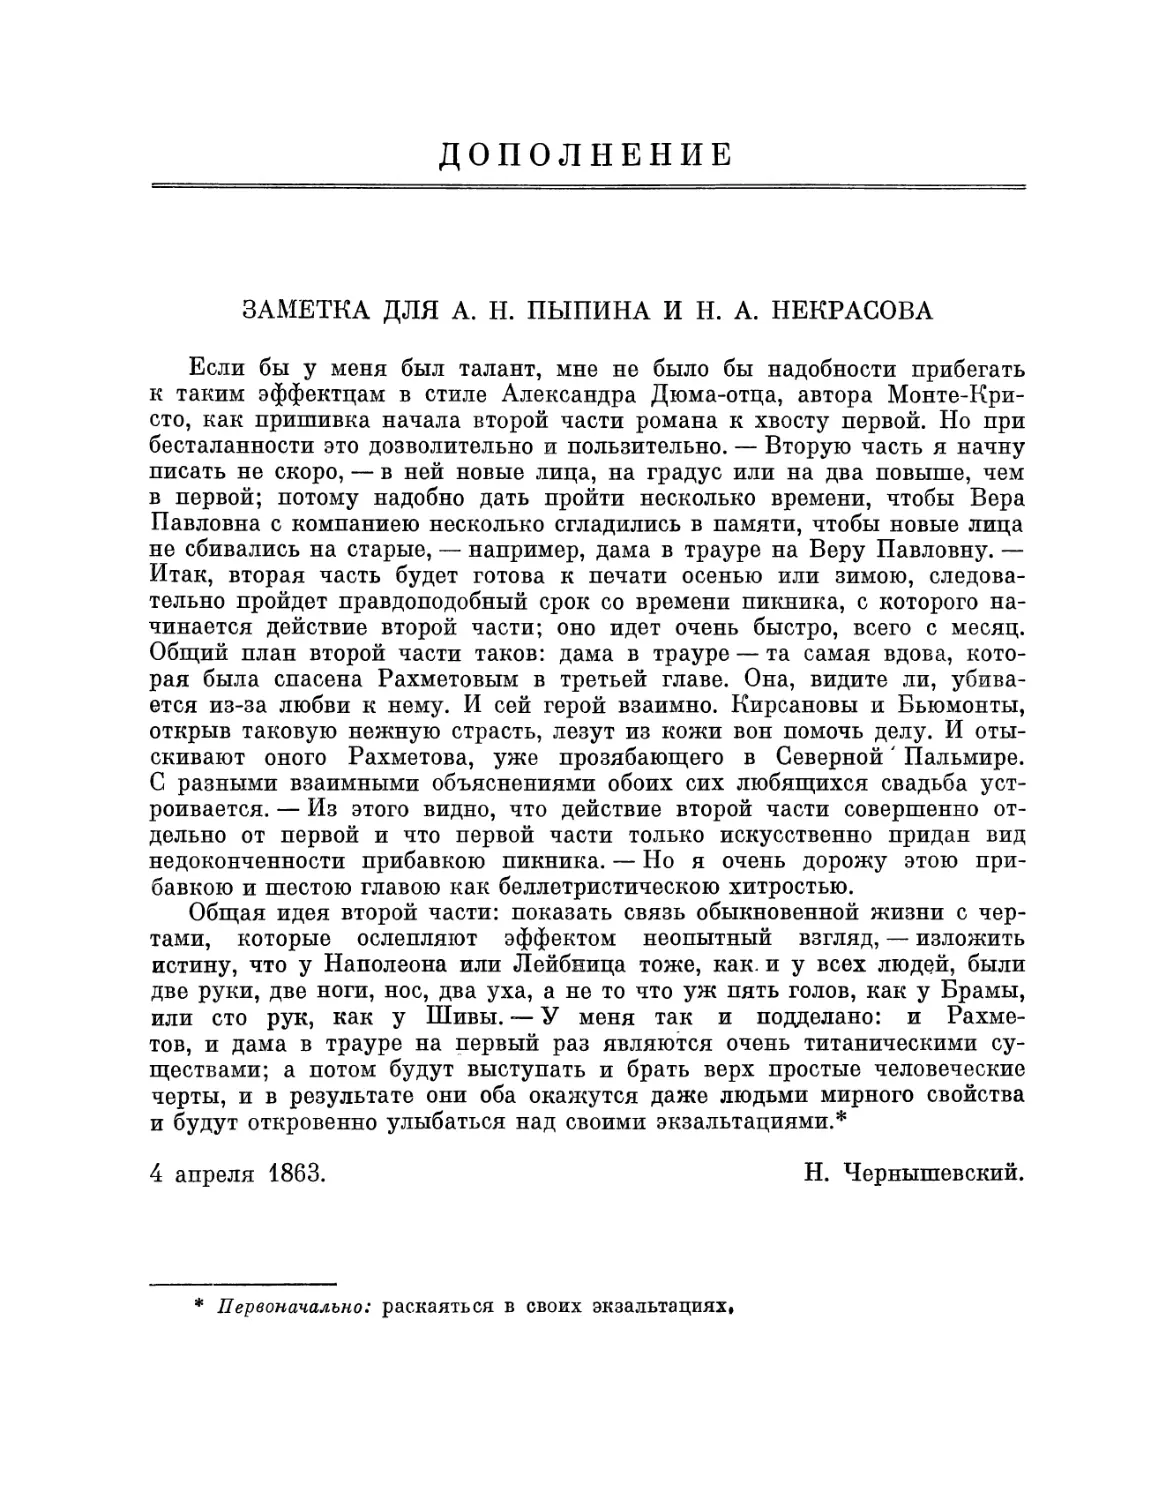 Дополнение. Заметка для А. Н. Пыпина и Н. А. Некрасова